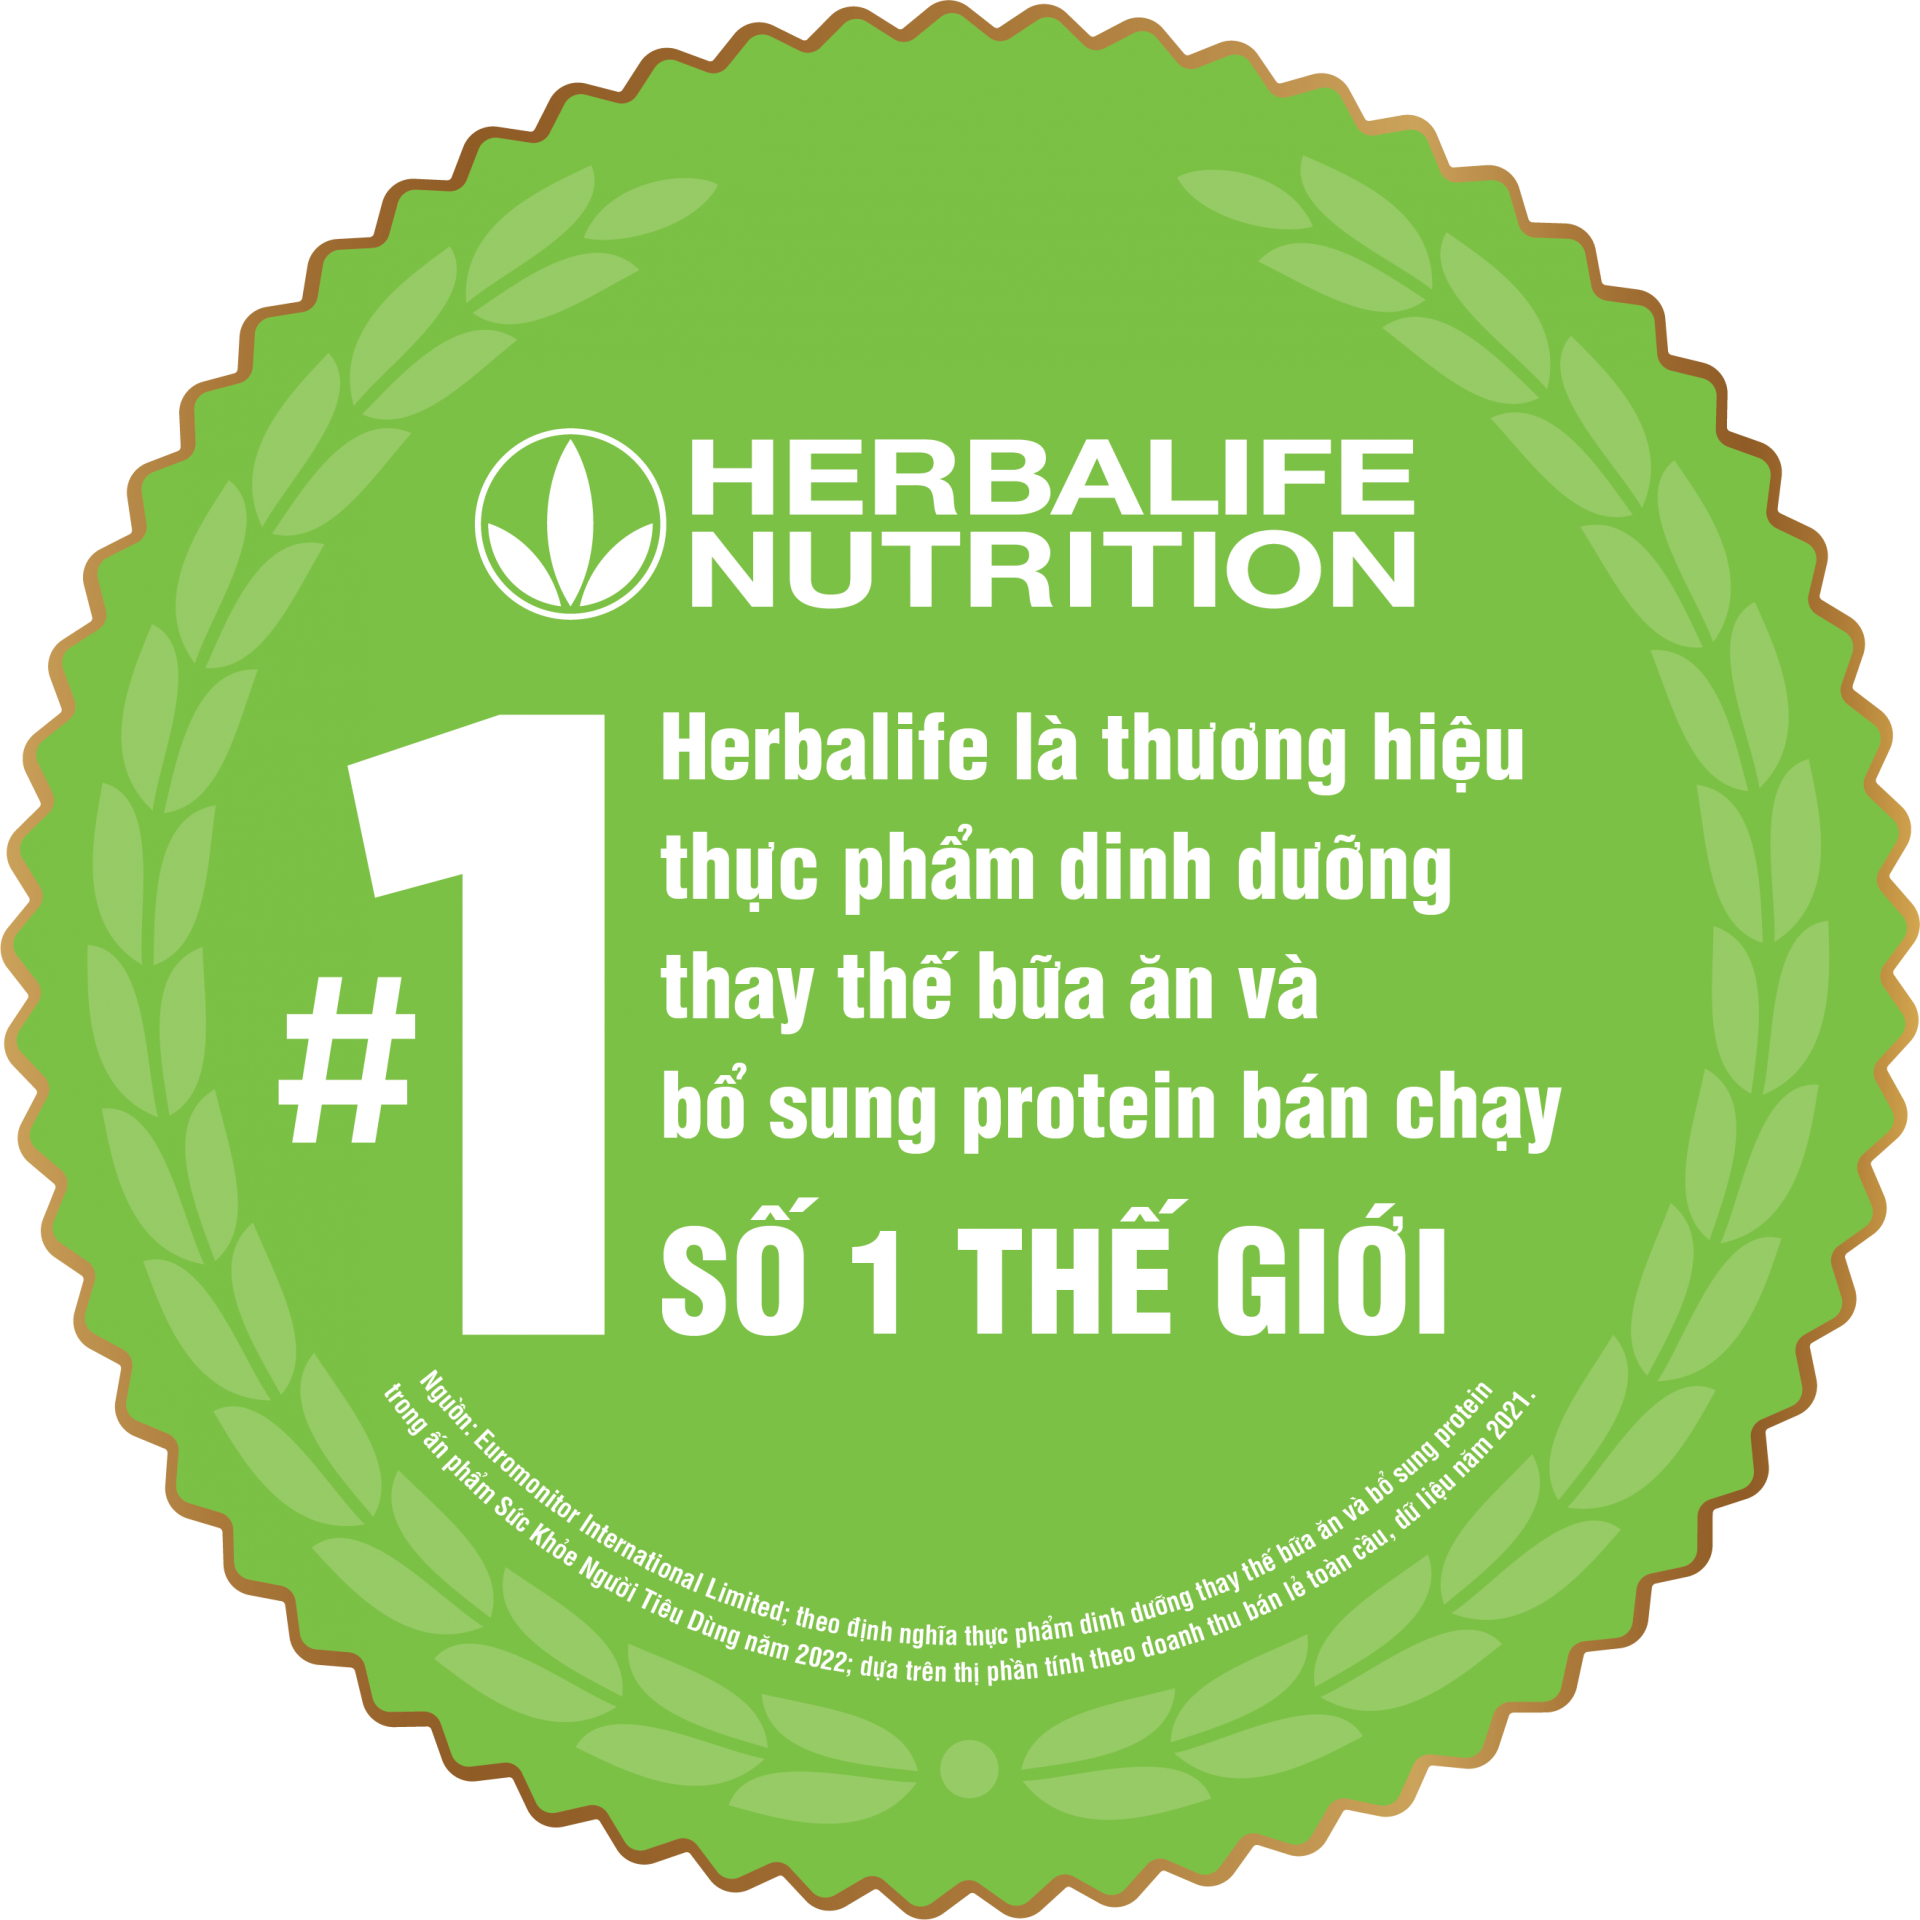 Herbalife Việt Nam được vinh danh “Top Công Nghiệp 4.0 Việt Nam” với Ứng dụng My VNClub